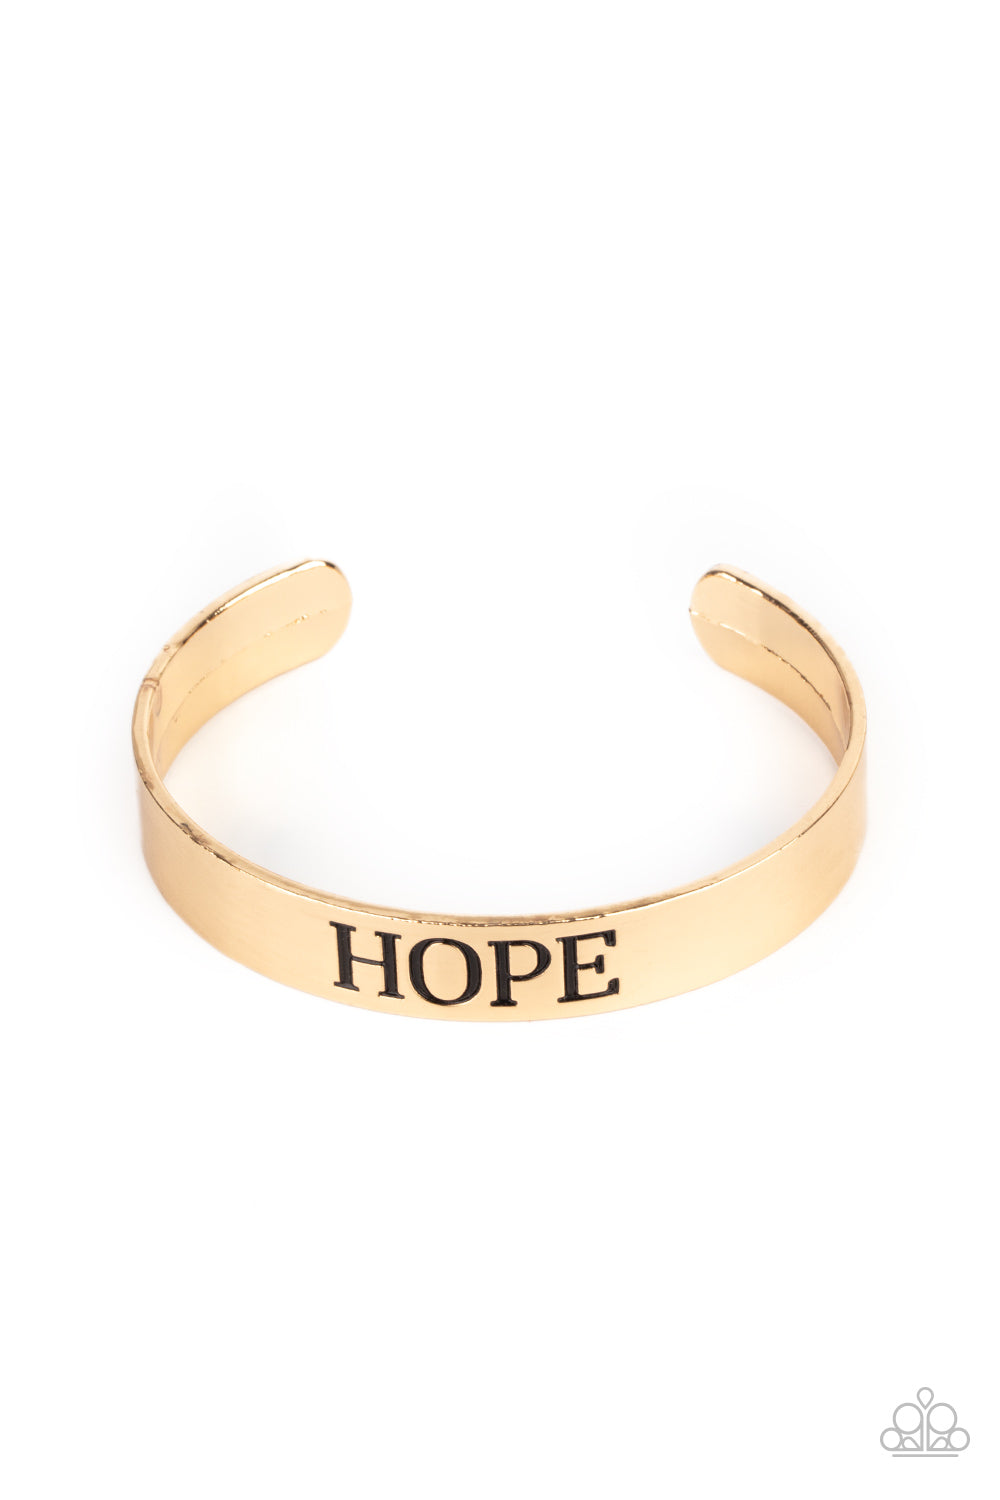 Hope Makes The World Go Round - Gold Bracelet freeshipping - JewLz4u Gemstone Gallery